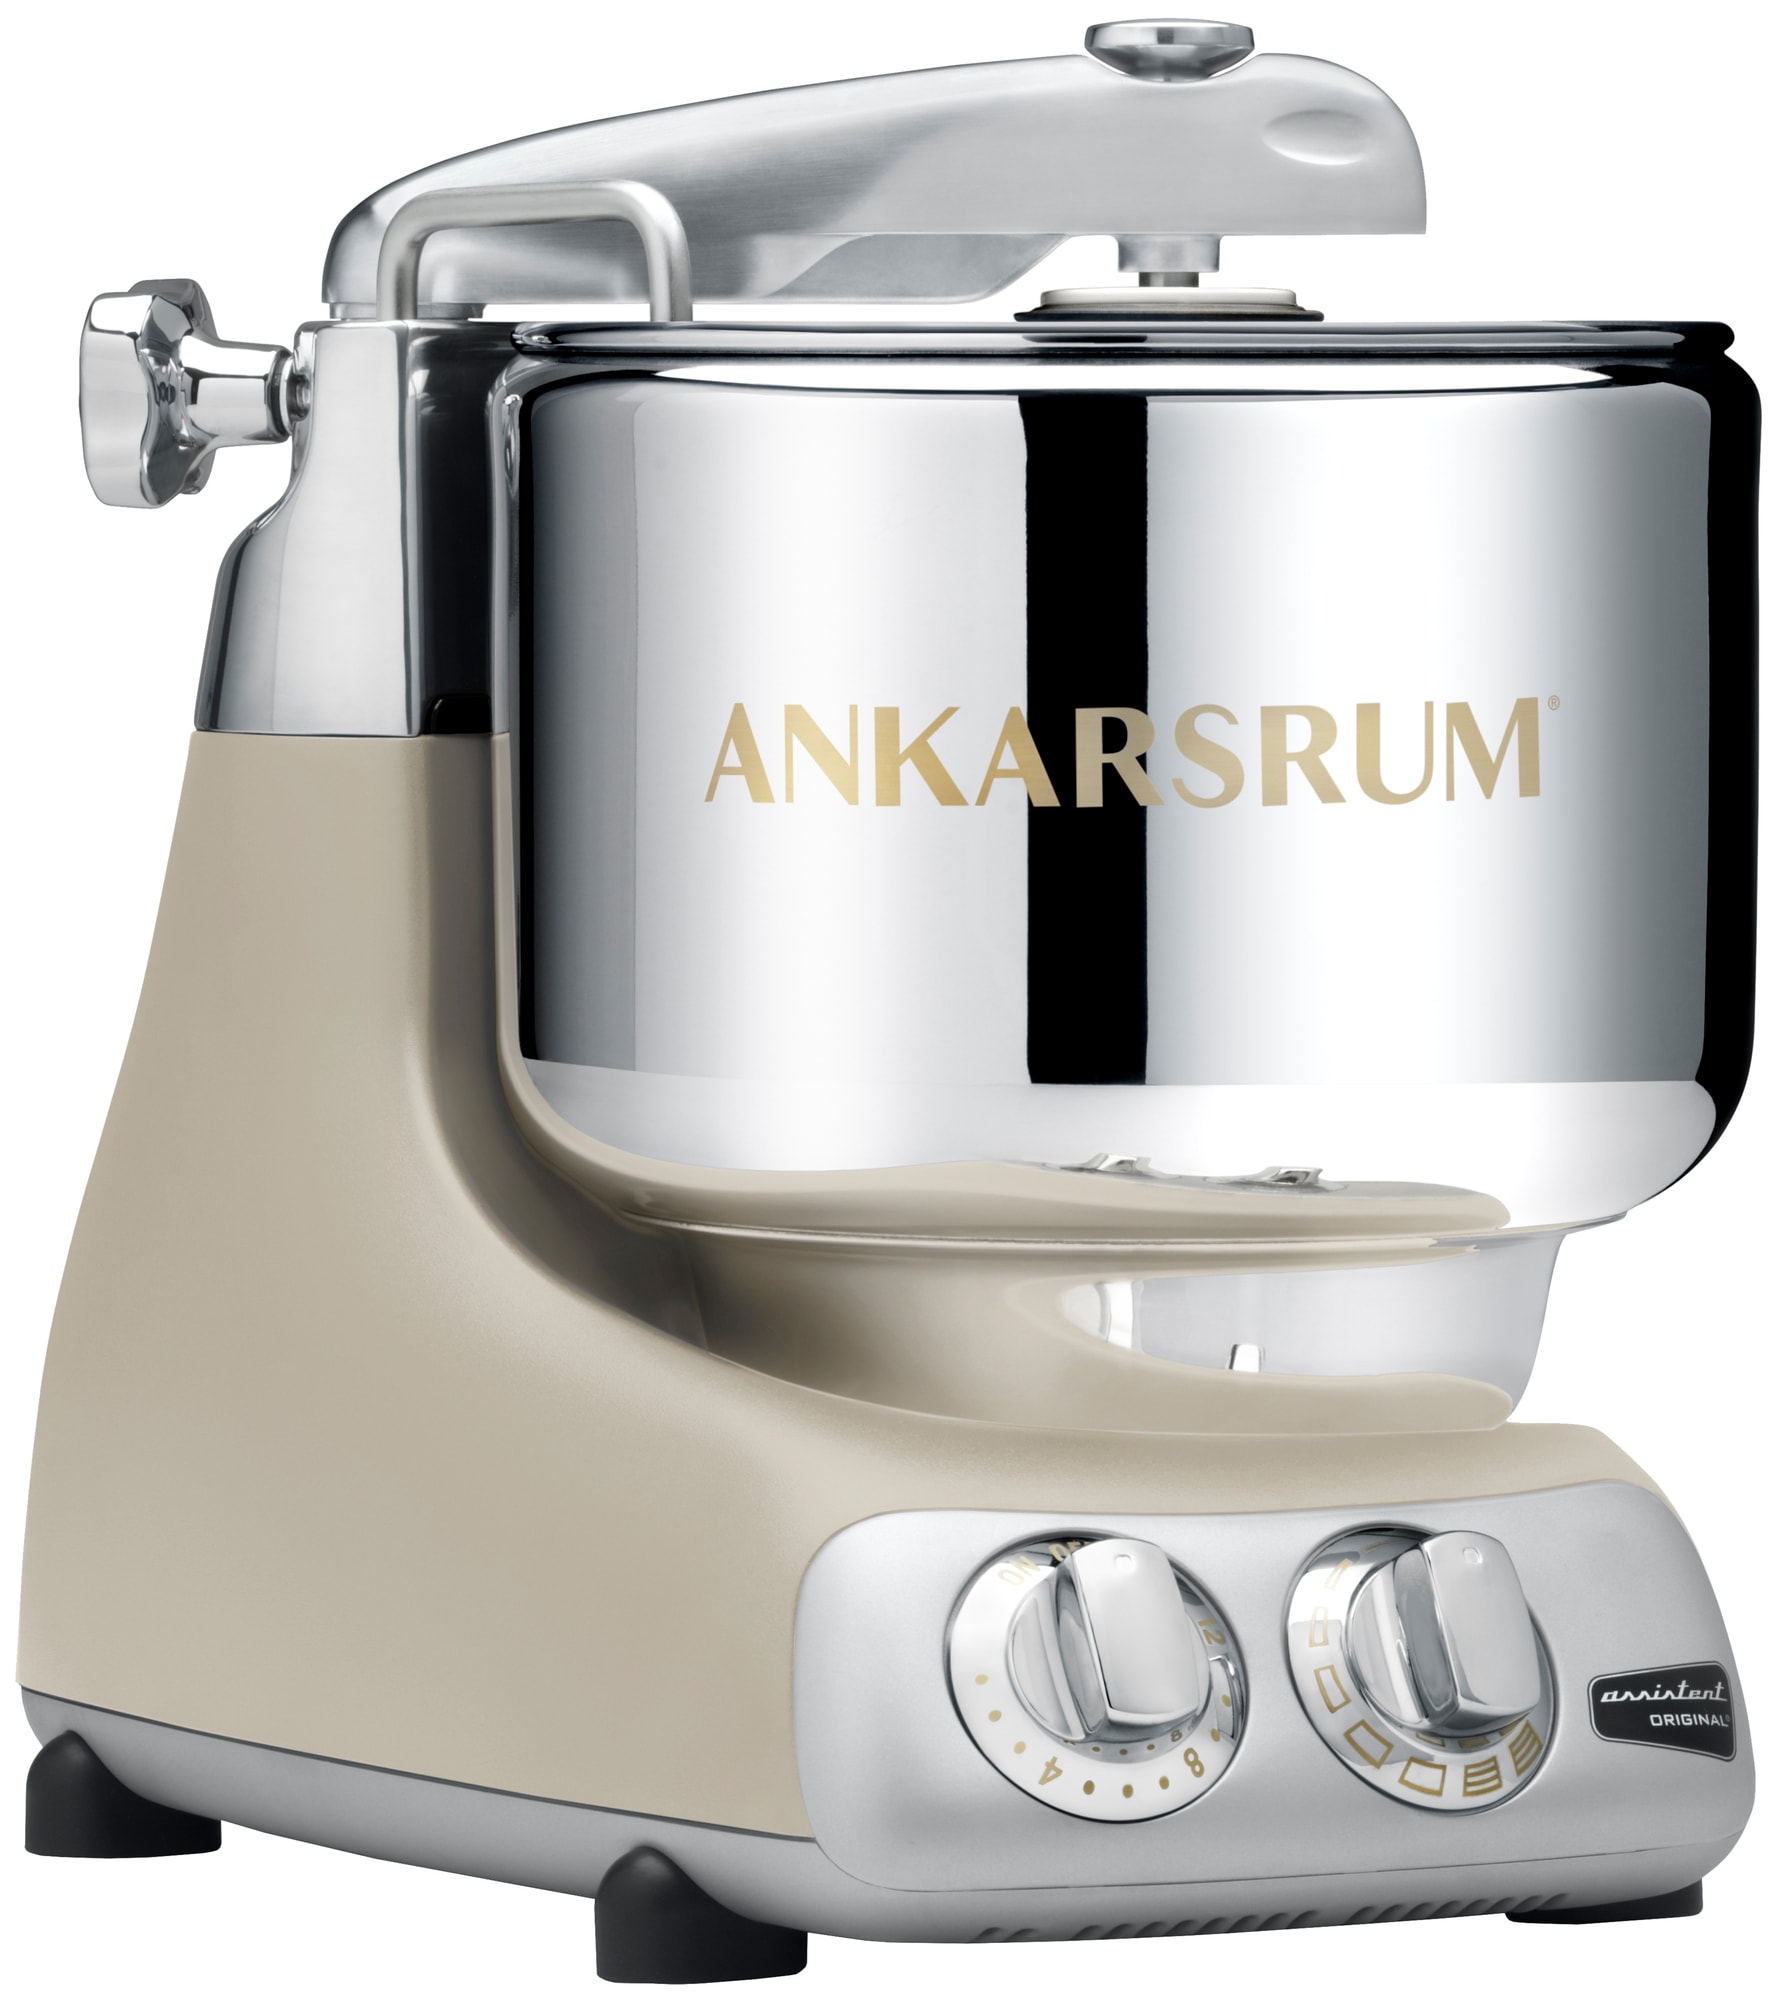 Billede af Ankarsrum Assistant Original køkkenmaskine AKM6230HB (beige)